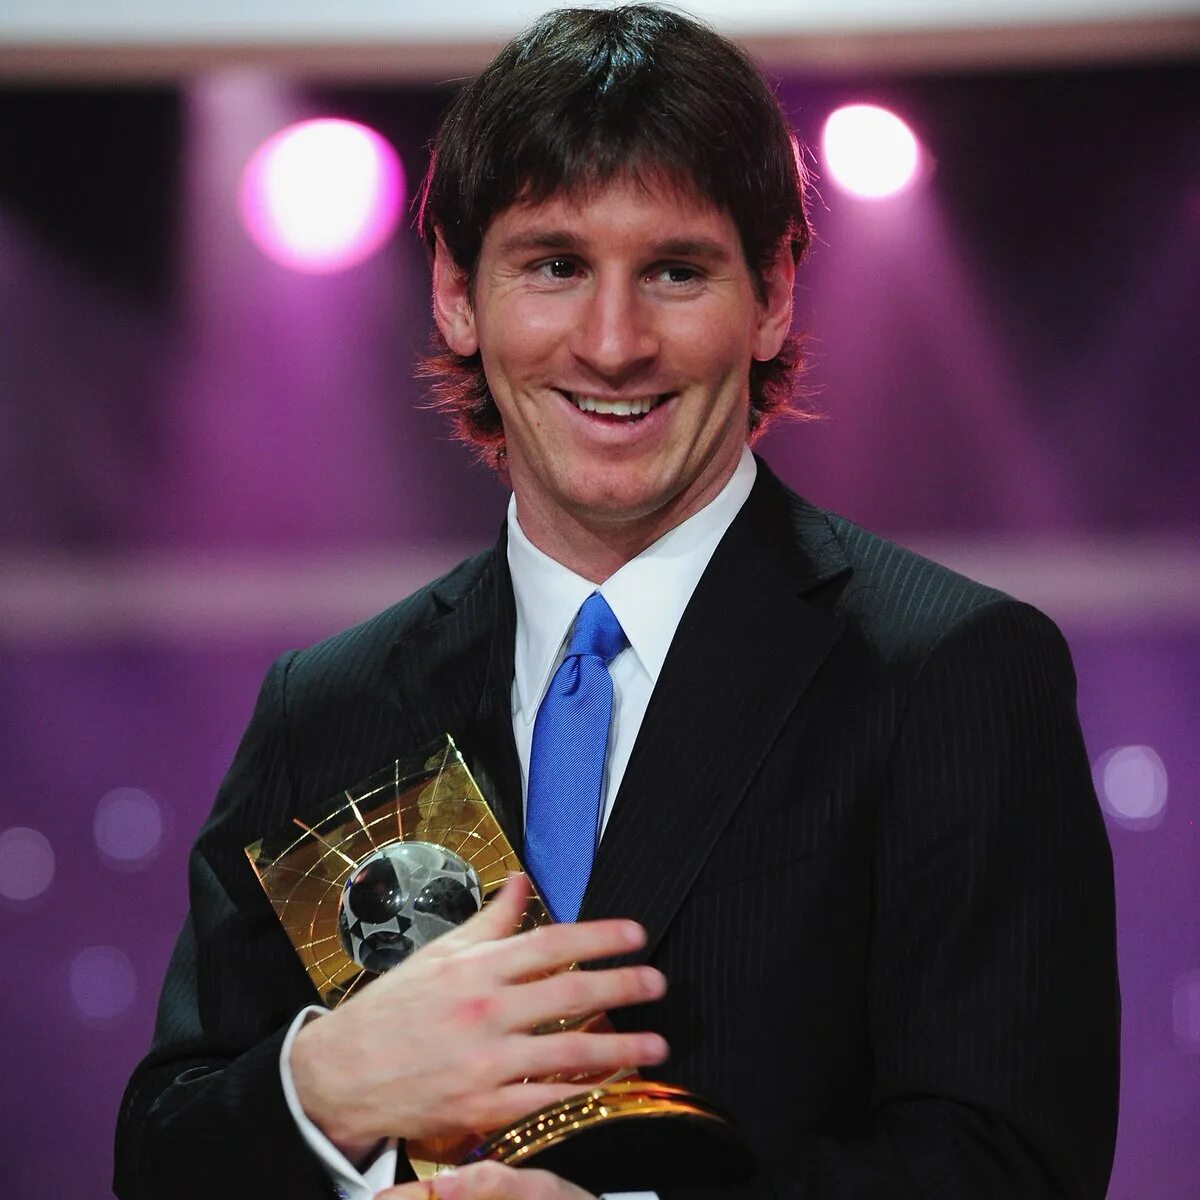 Лео Месси. “Player of the year 2009” Messi. Месси золотой мяч 2012. Лучший игрок.